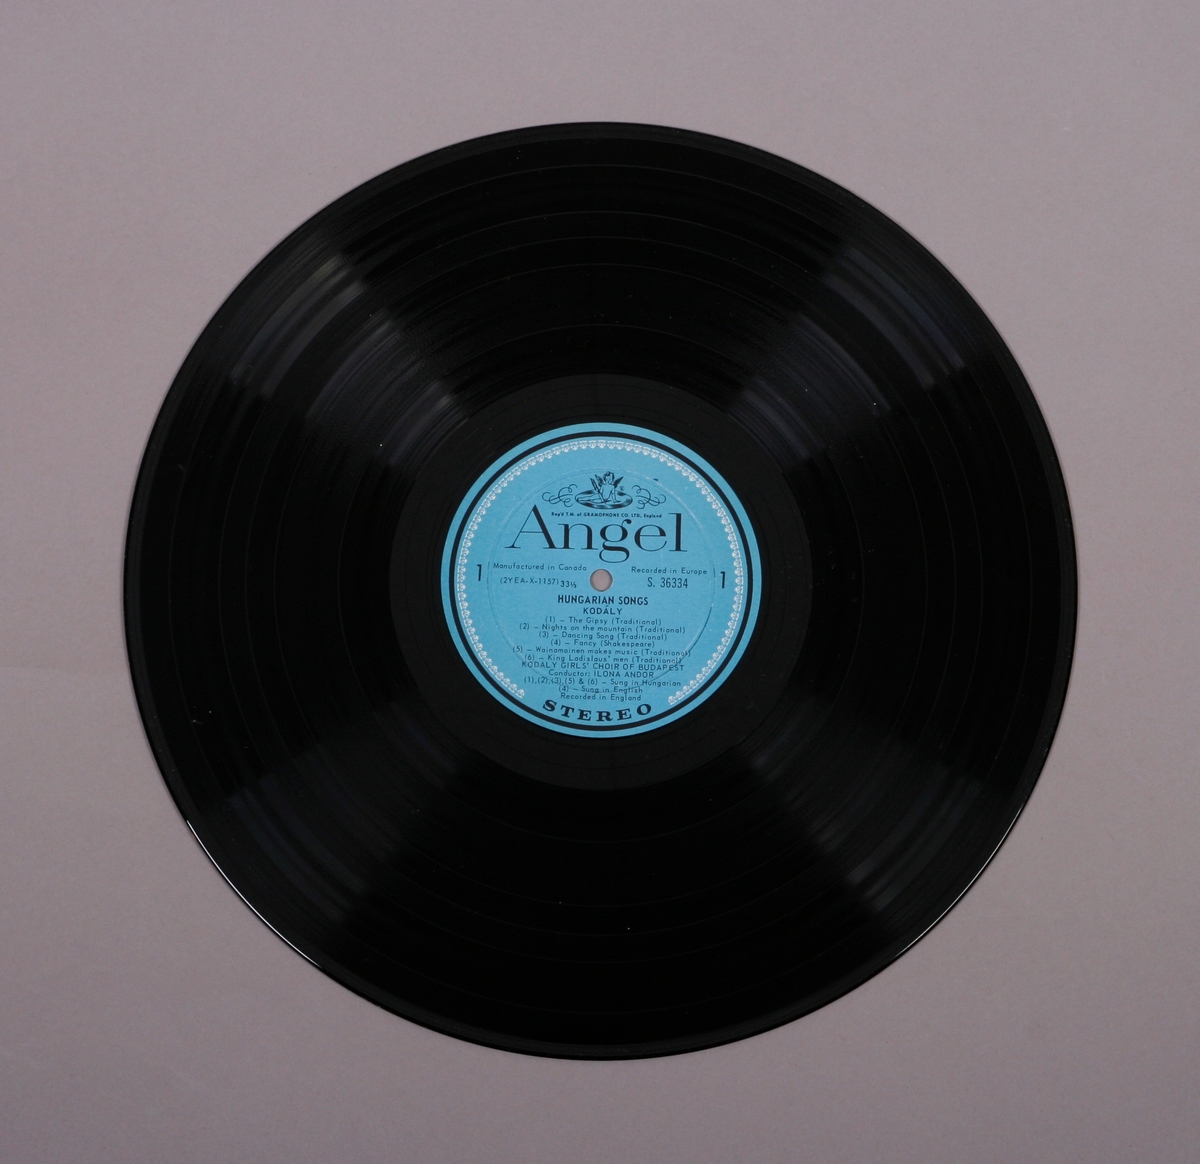 Grammofonplate i svart vinyl. Plata ligger i en papirlomme med plastfôr merket "Angel Revords".